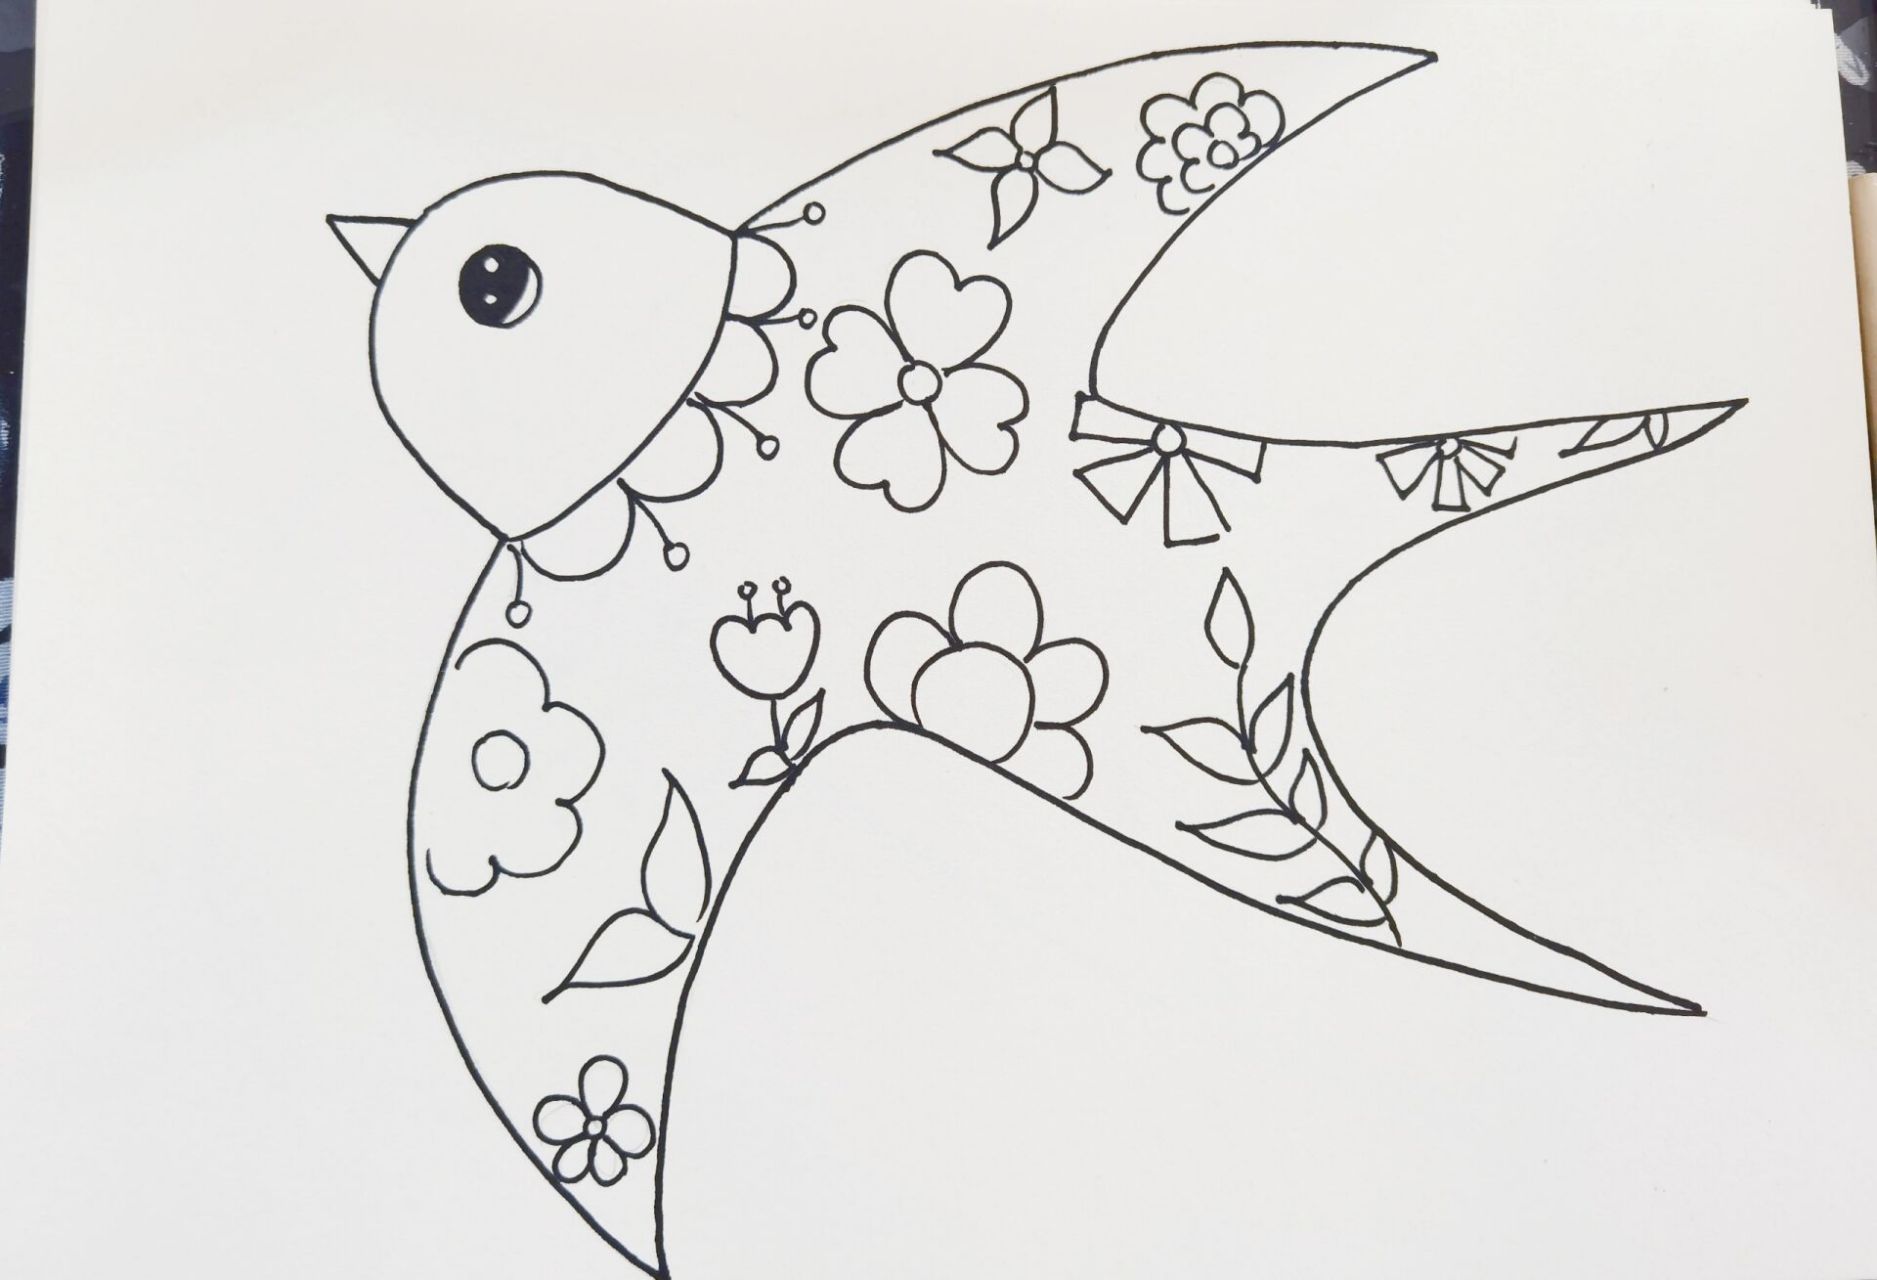 小燕子穿花衣绘画 燕子的花衣裳儿童画,下一篇更新更多同系列作品